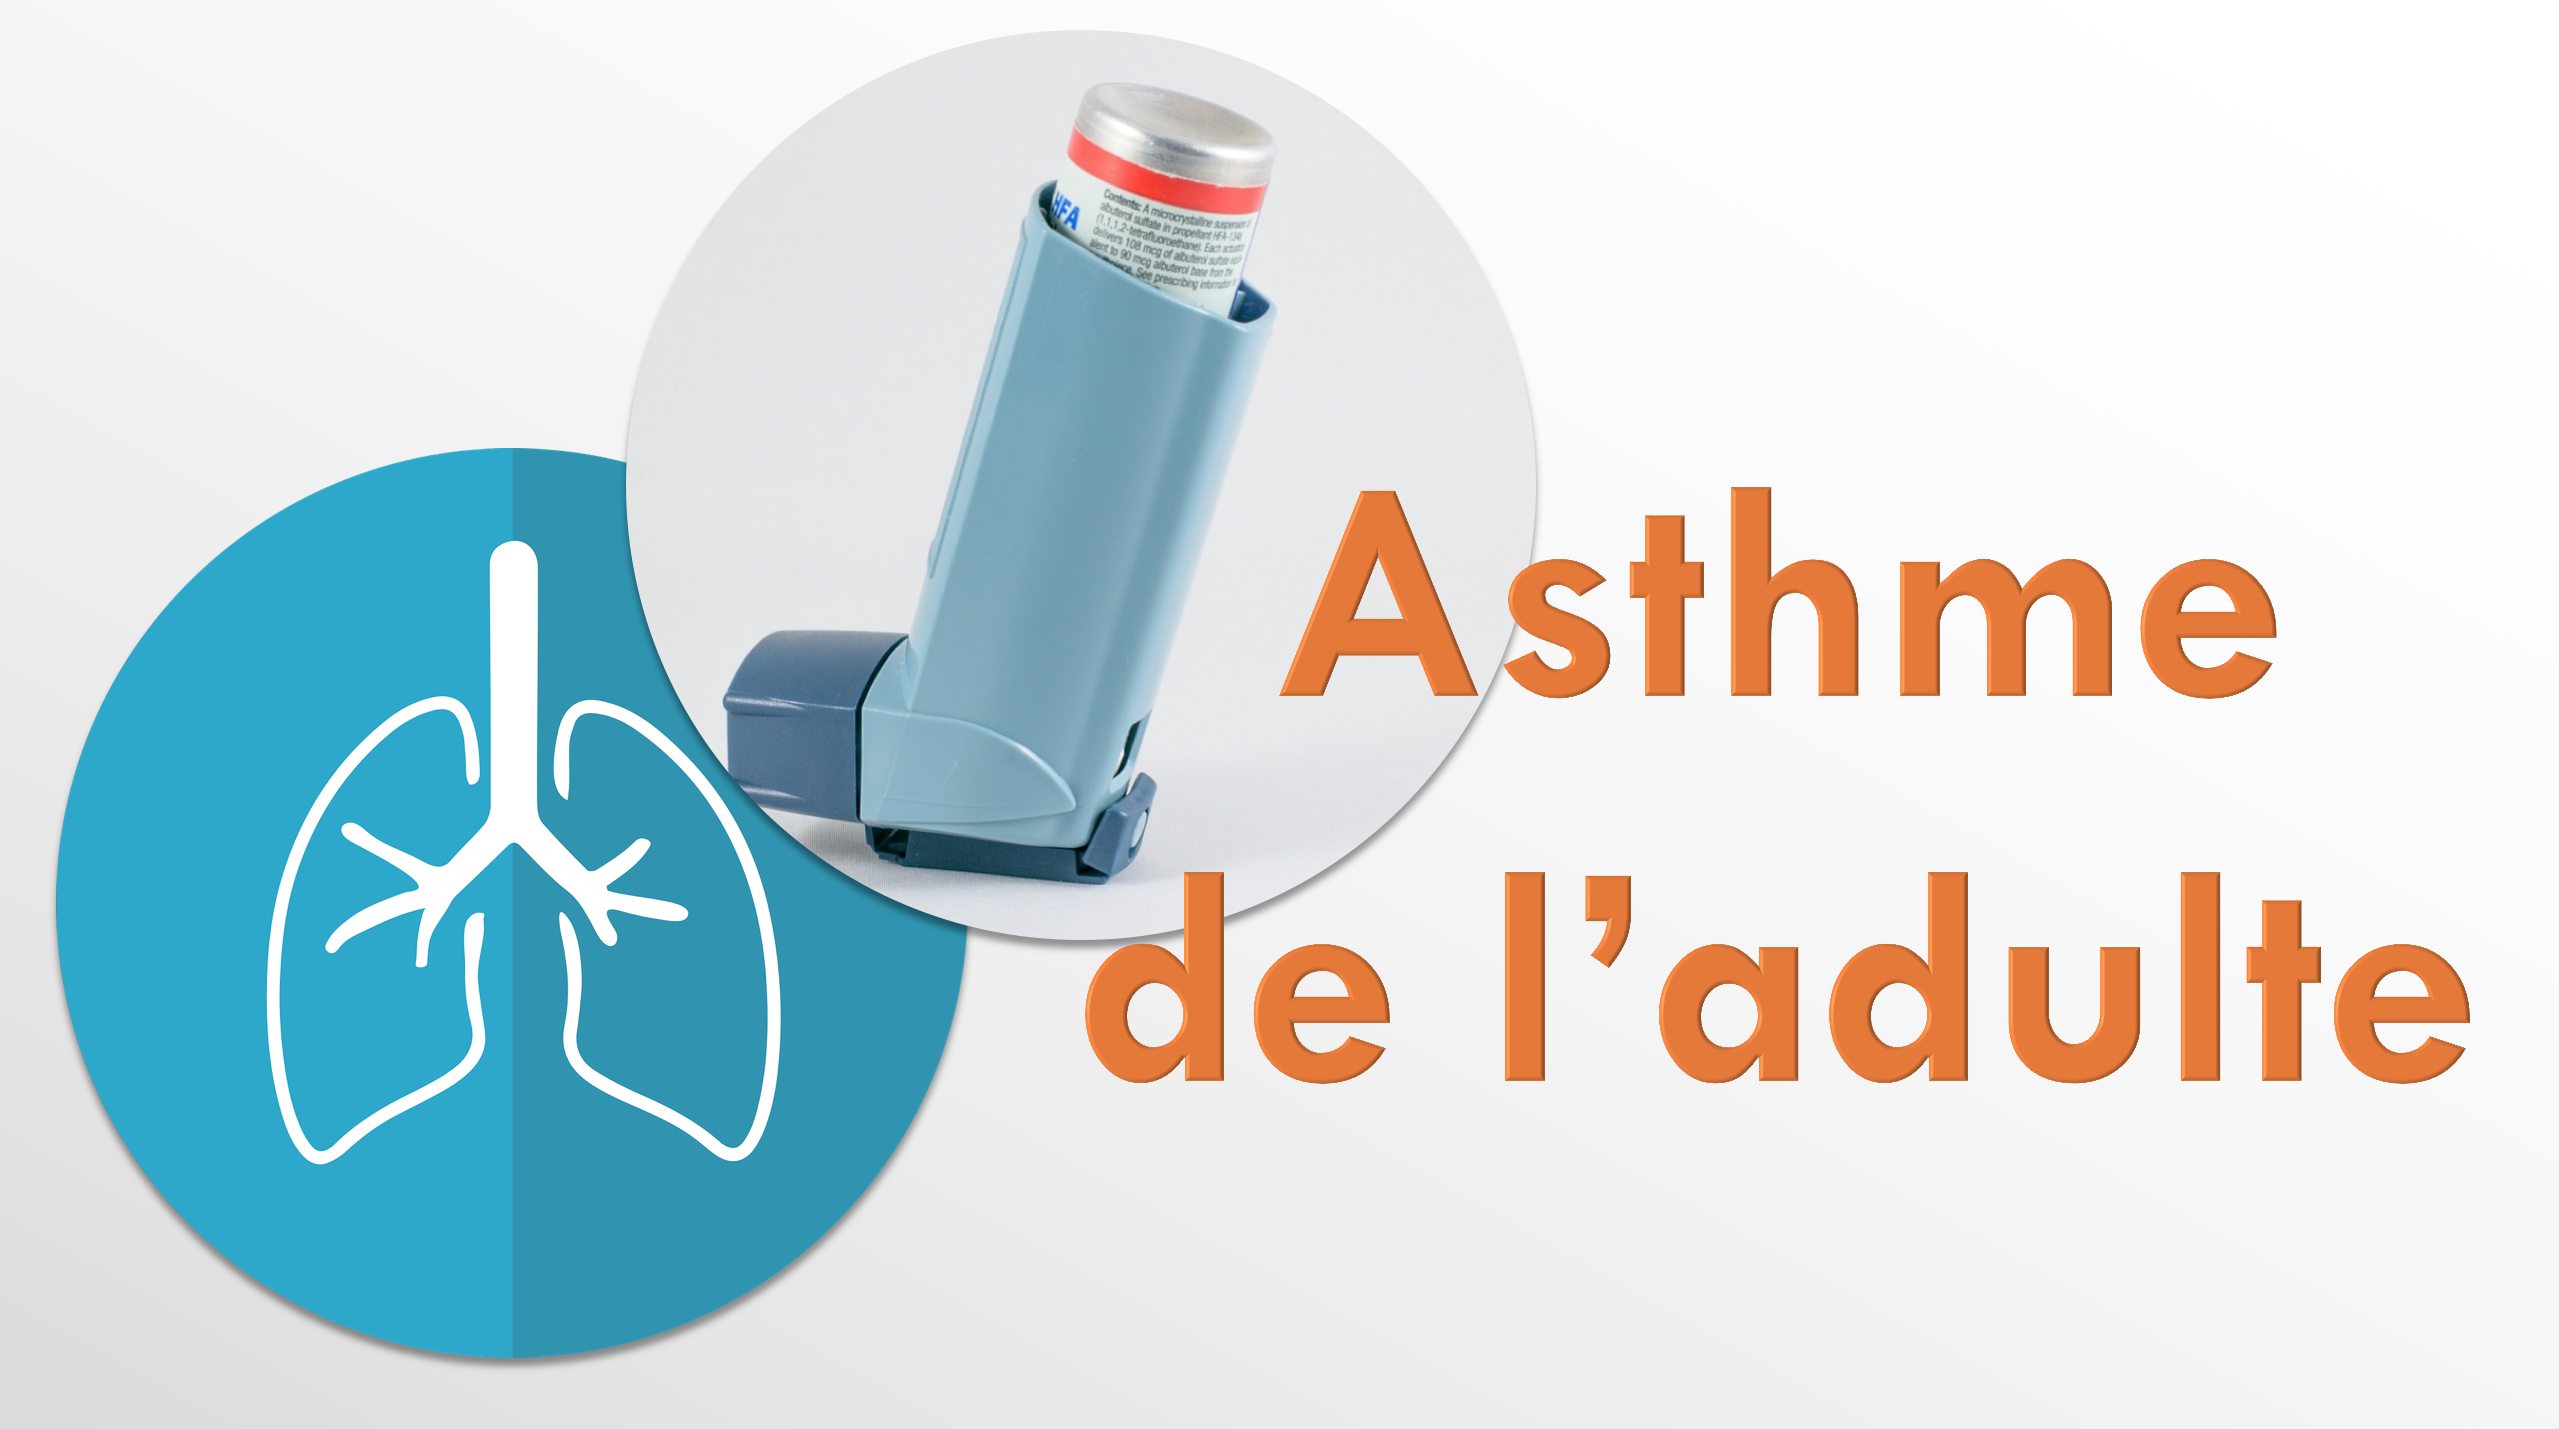 01045 Asthme de l'adulte Accueil